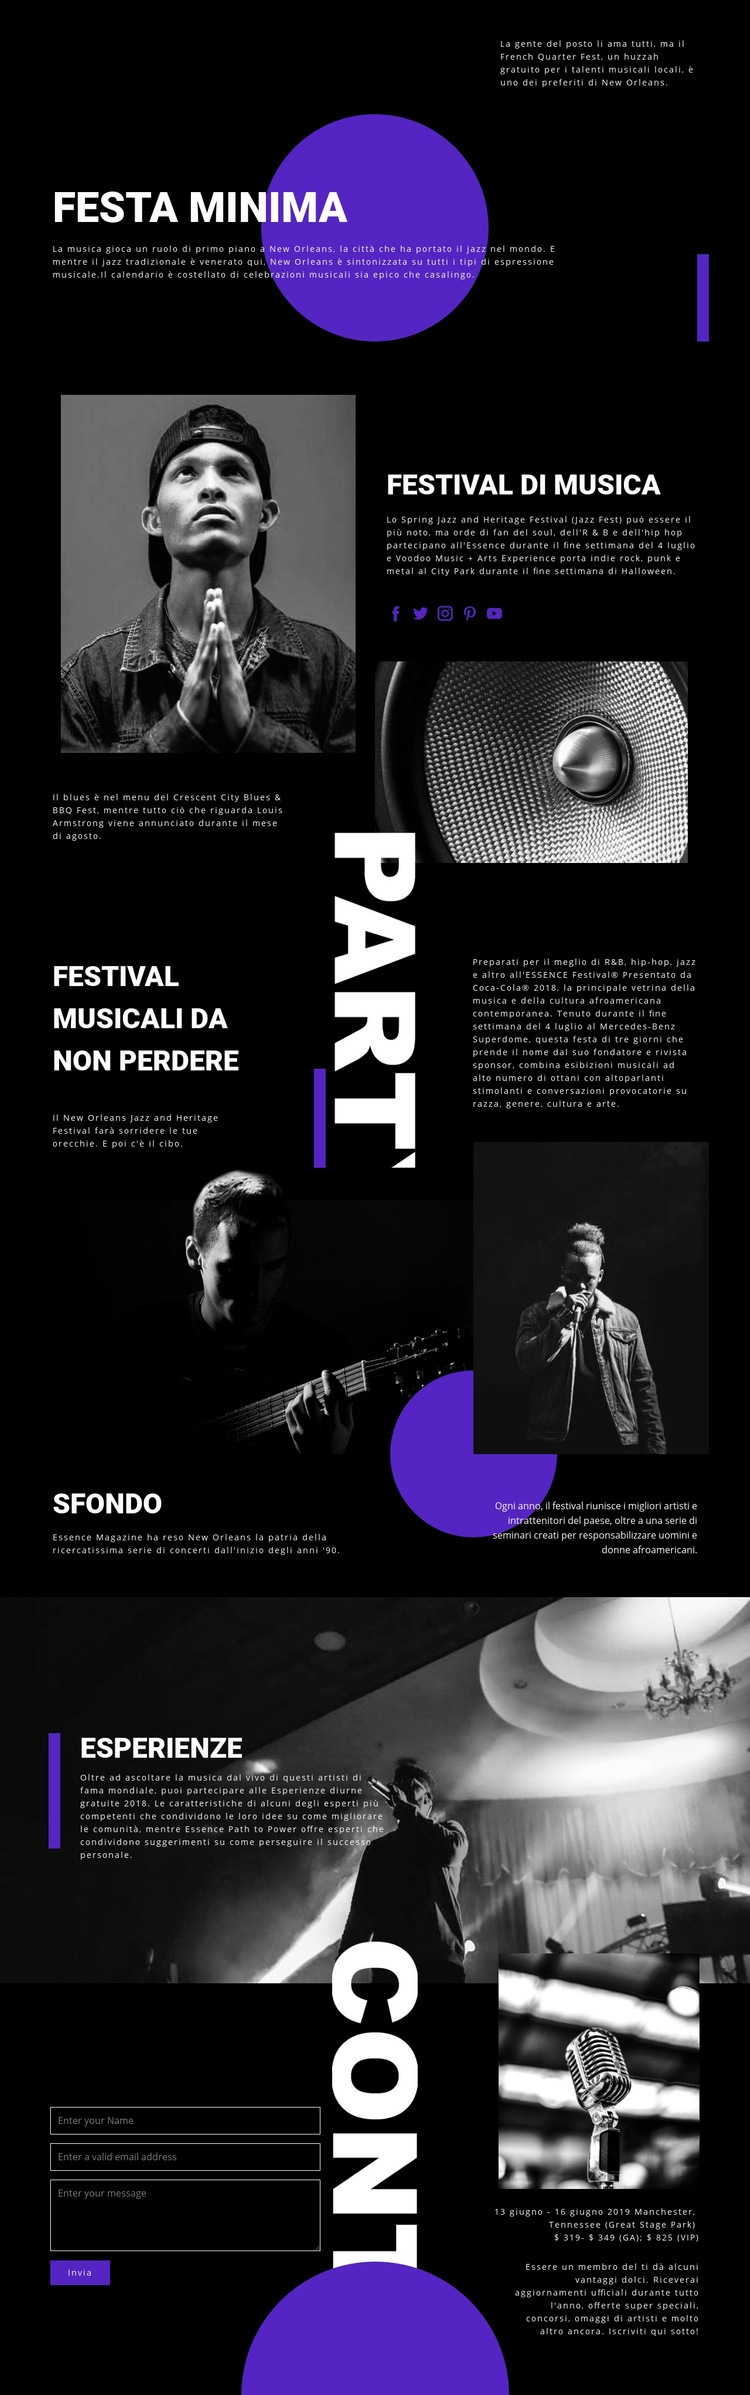 Festival musicale Mockup del sito web